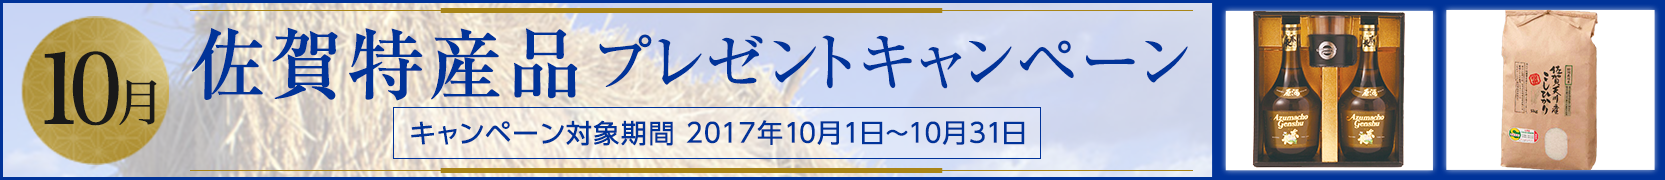 佐賀特産品プレゼントキャンペーン 10月